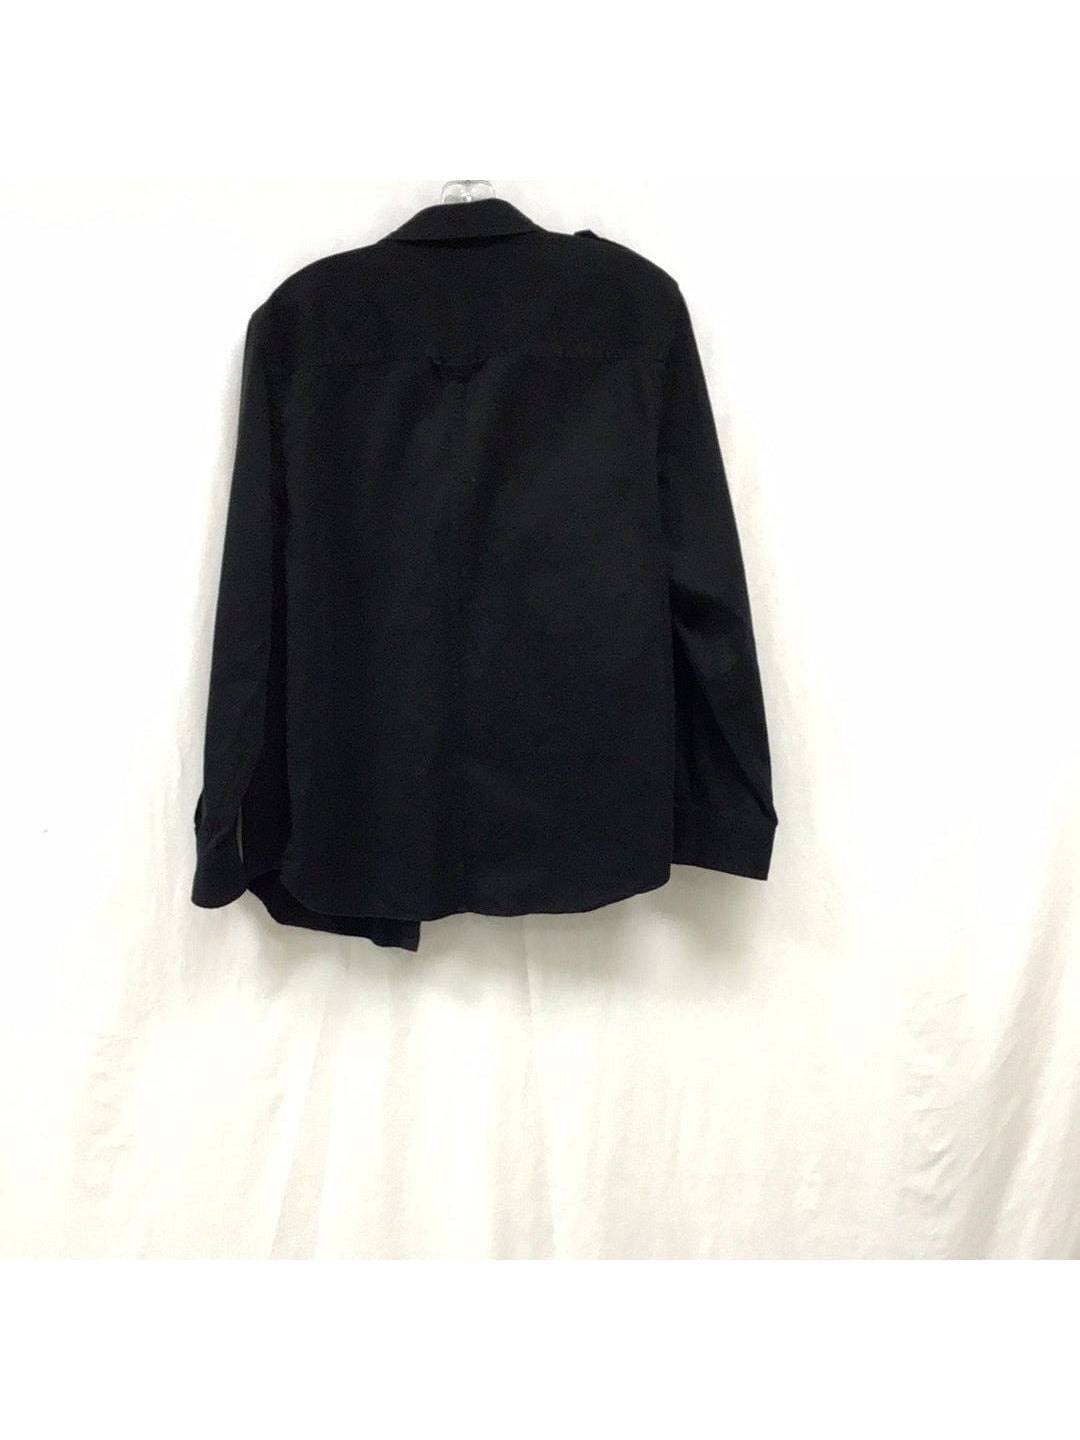 Ralph Lauren Men's Black Button Down Shirt - The Kennedy Collective Thrift - 